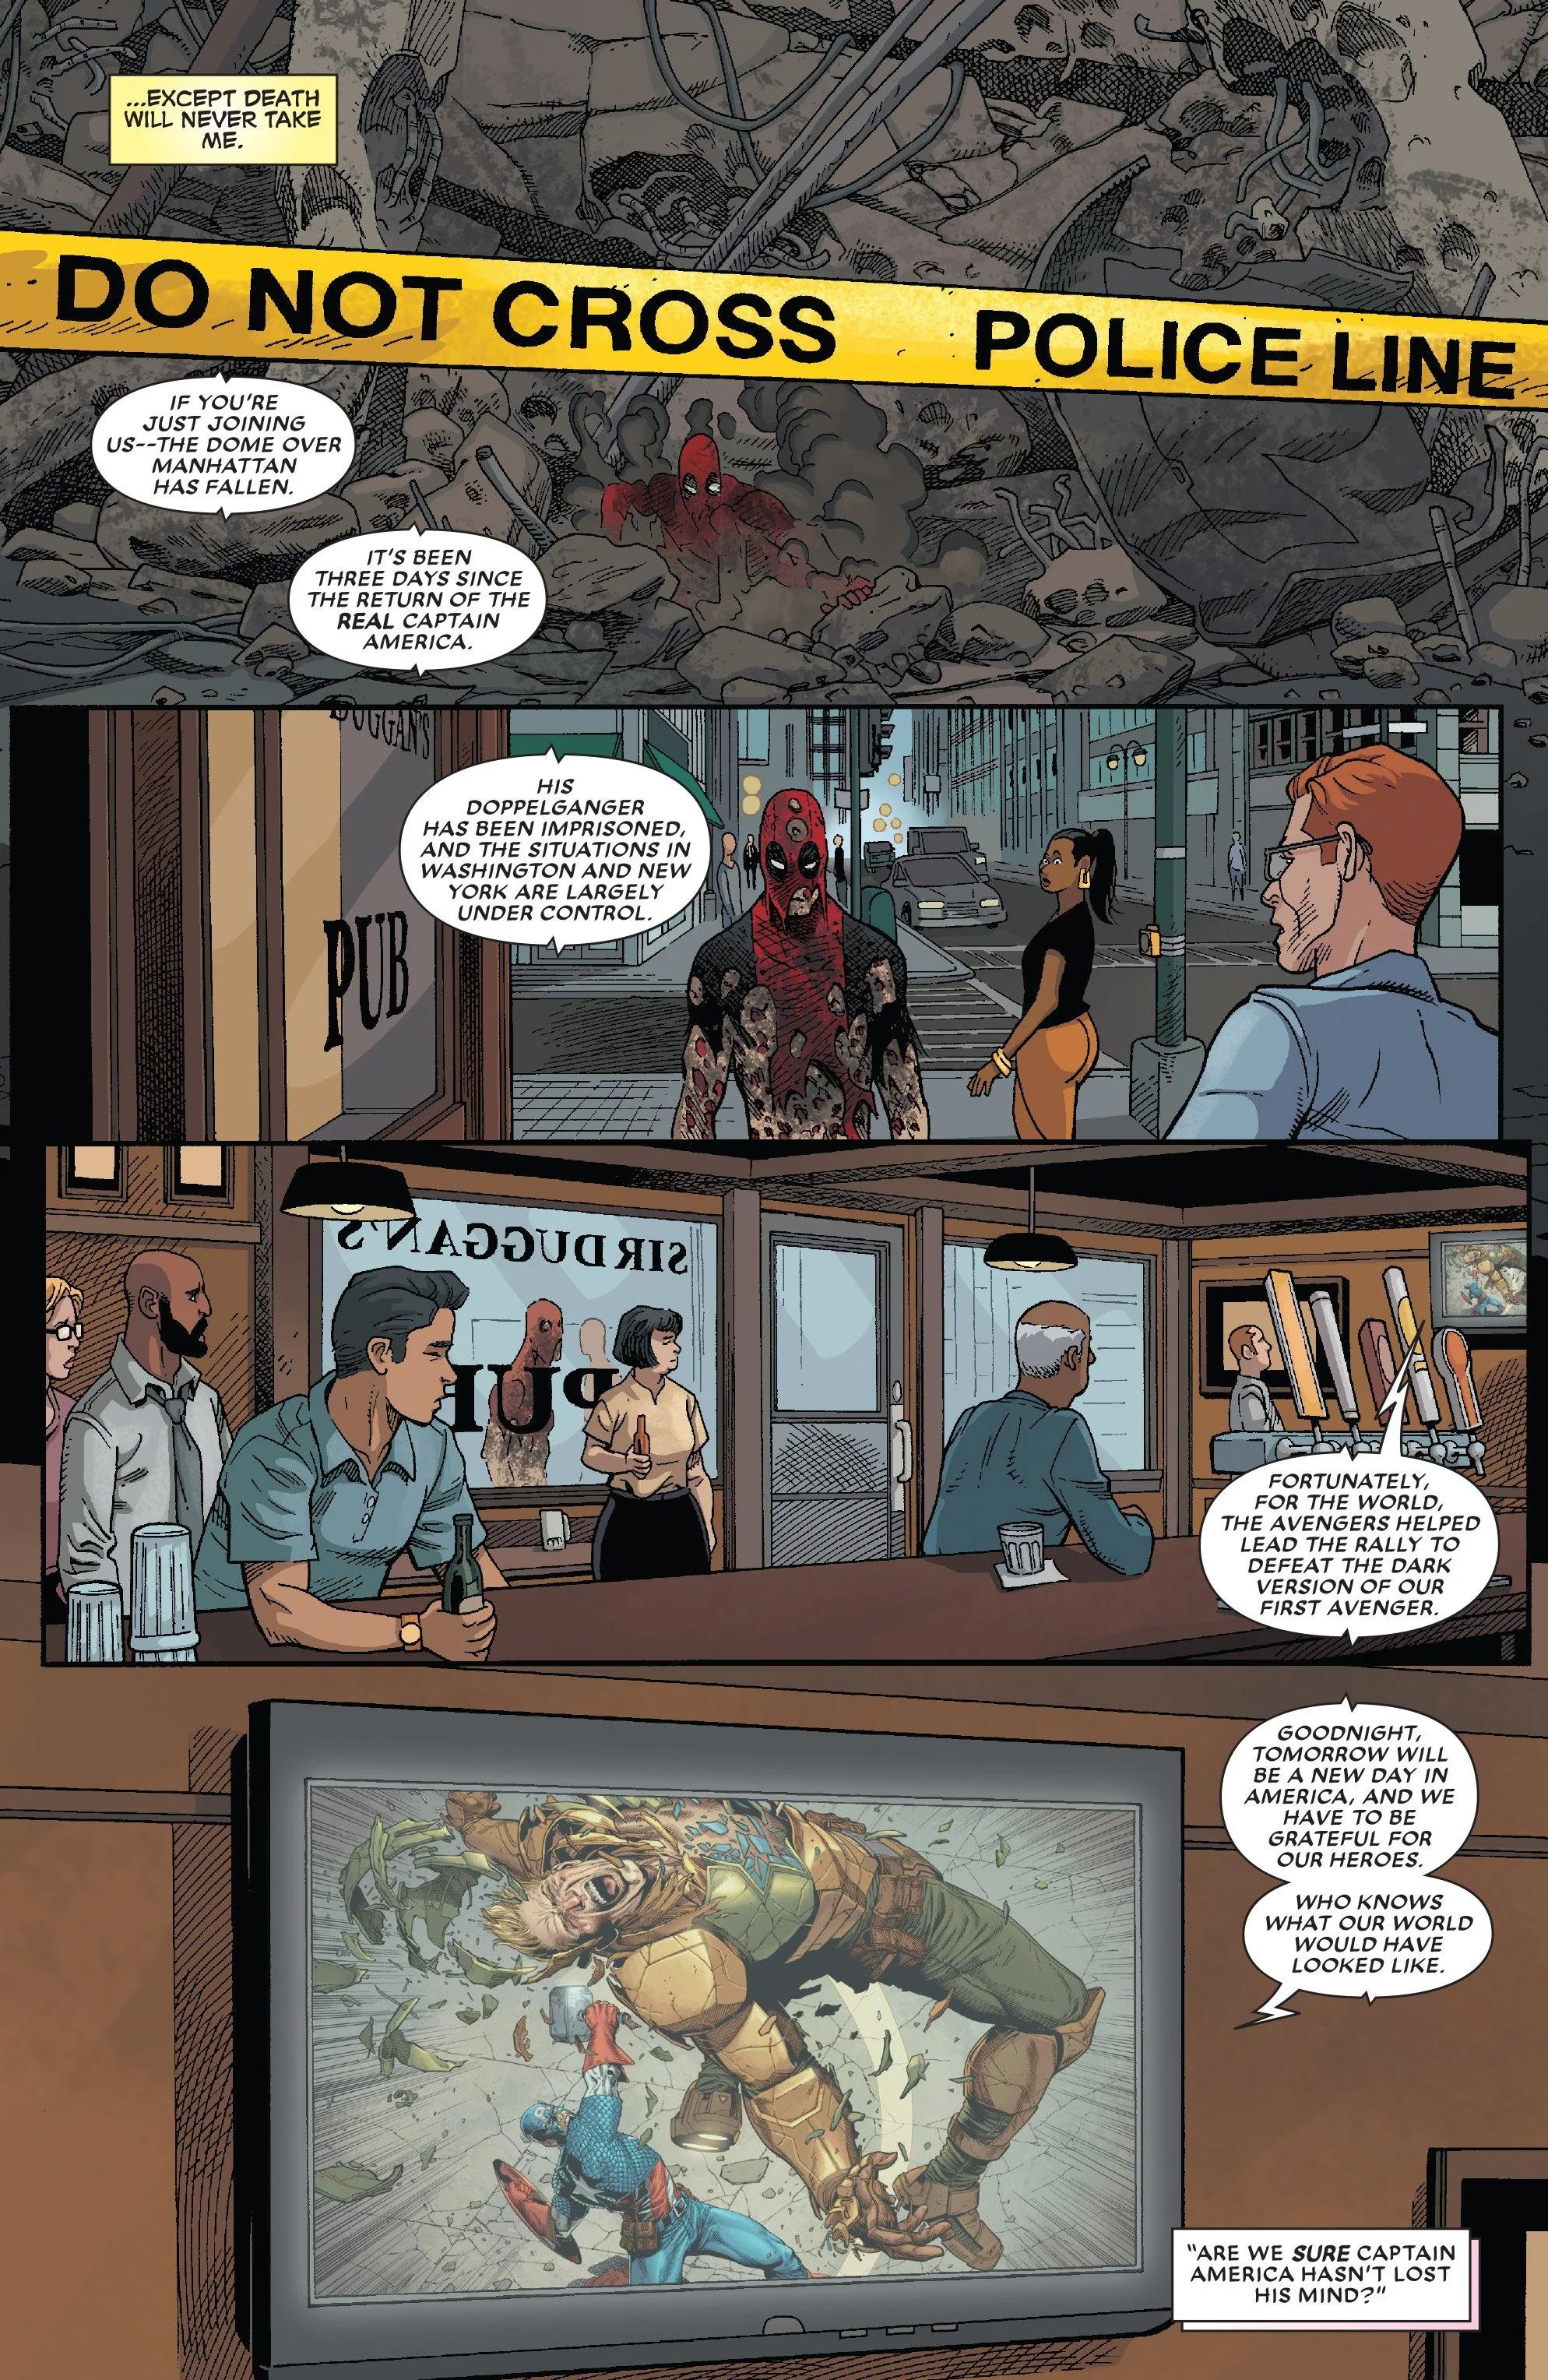 Комикс про Дэдпула подтверждает — теперь у Marvel два Капитана Америка - фото 4